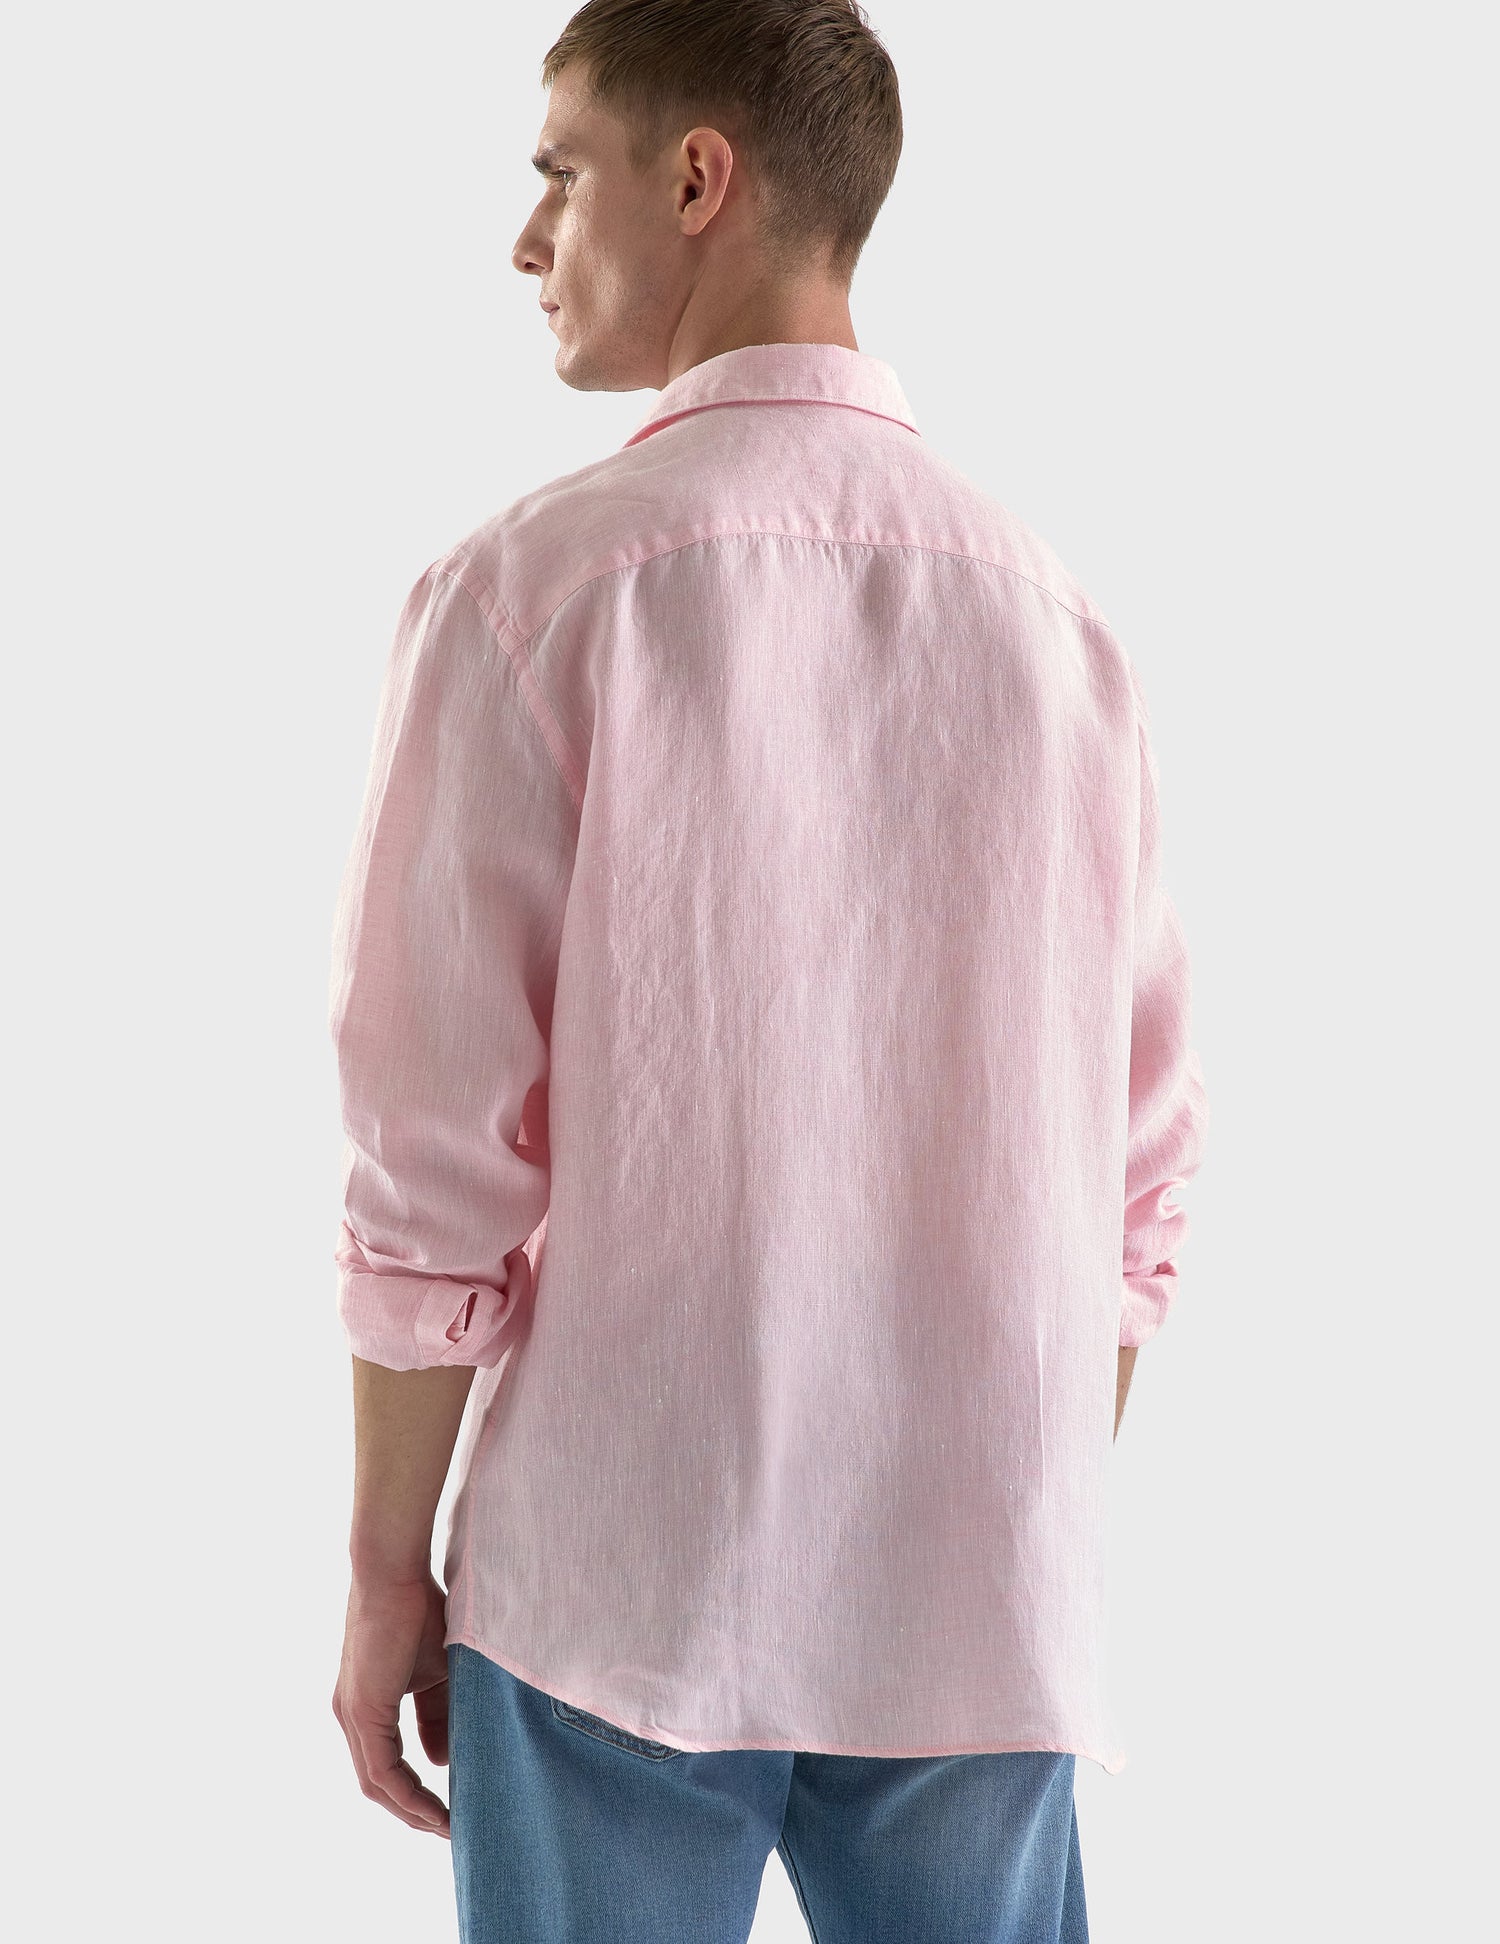 Auguste light pink linen shirt - Linen - French Collar#2